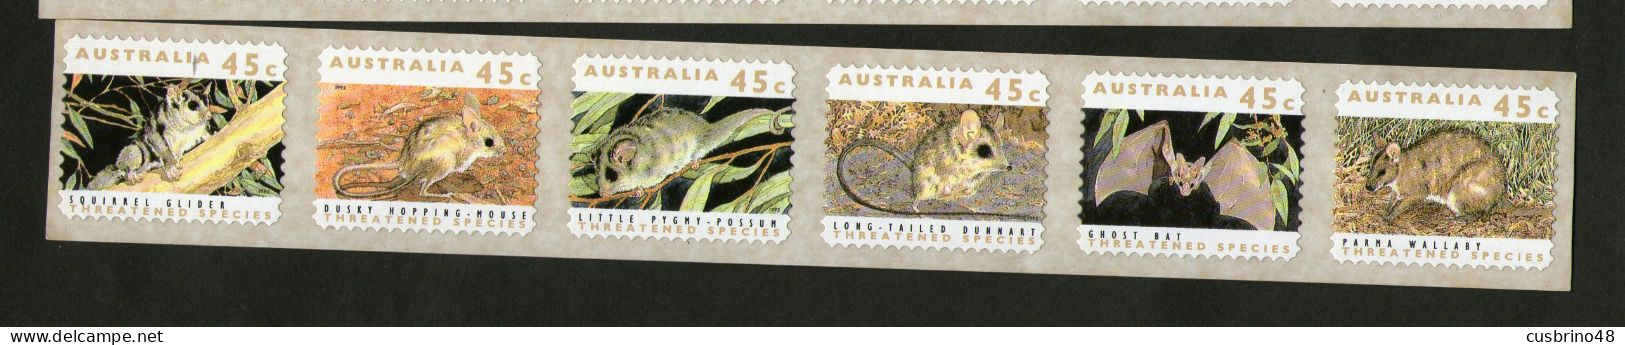 AUSTRALIA 1992 P & S Strip 45c Endangered Species Strip 6 PRINTSET 1 Koala Reprint. - Lot  AUS 236 - Neufs